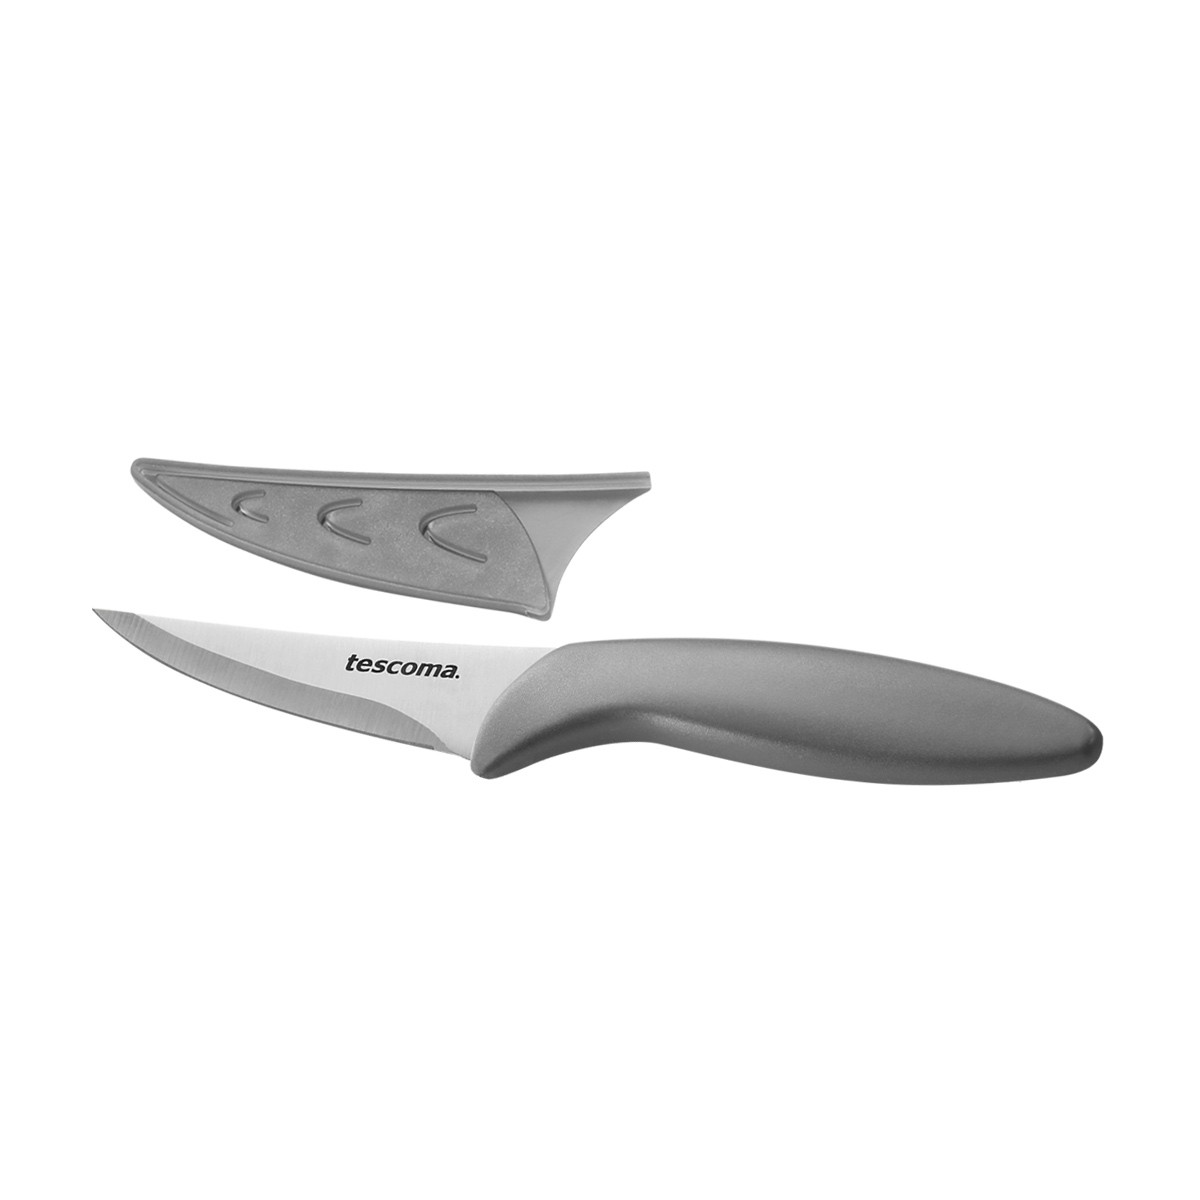 Nůž univerzální MOVE 8 cm, s ochranným pouzdrem